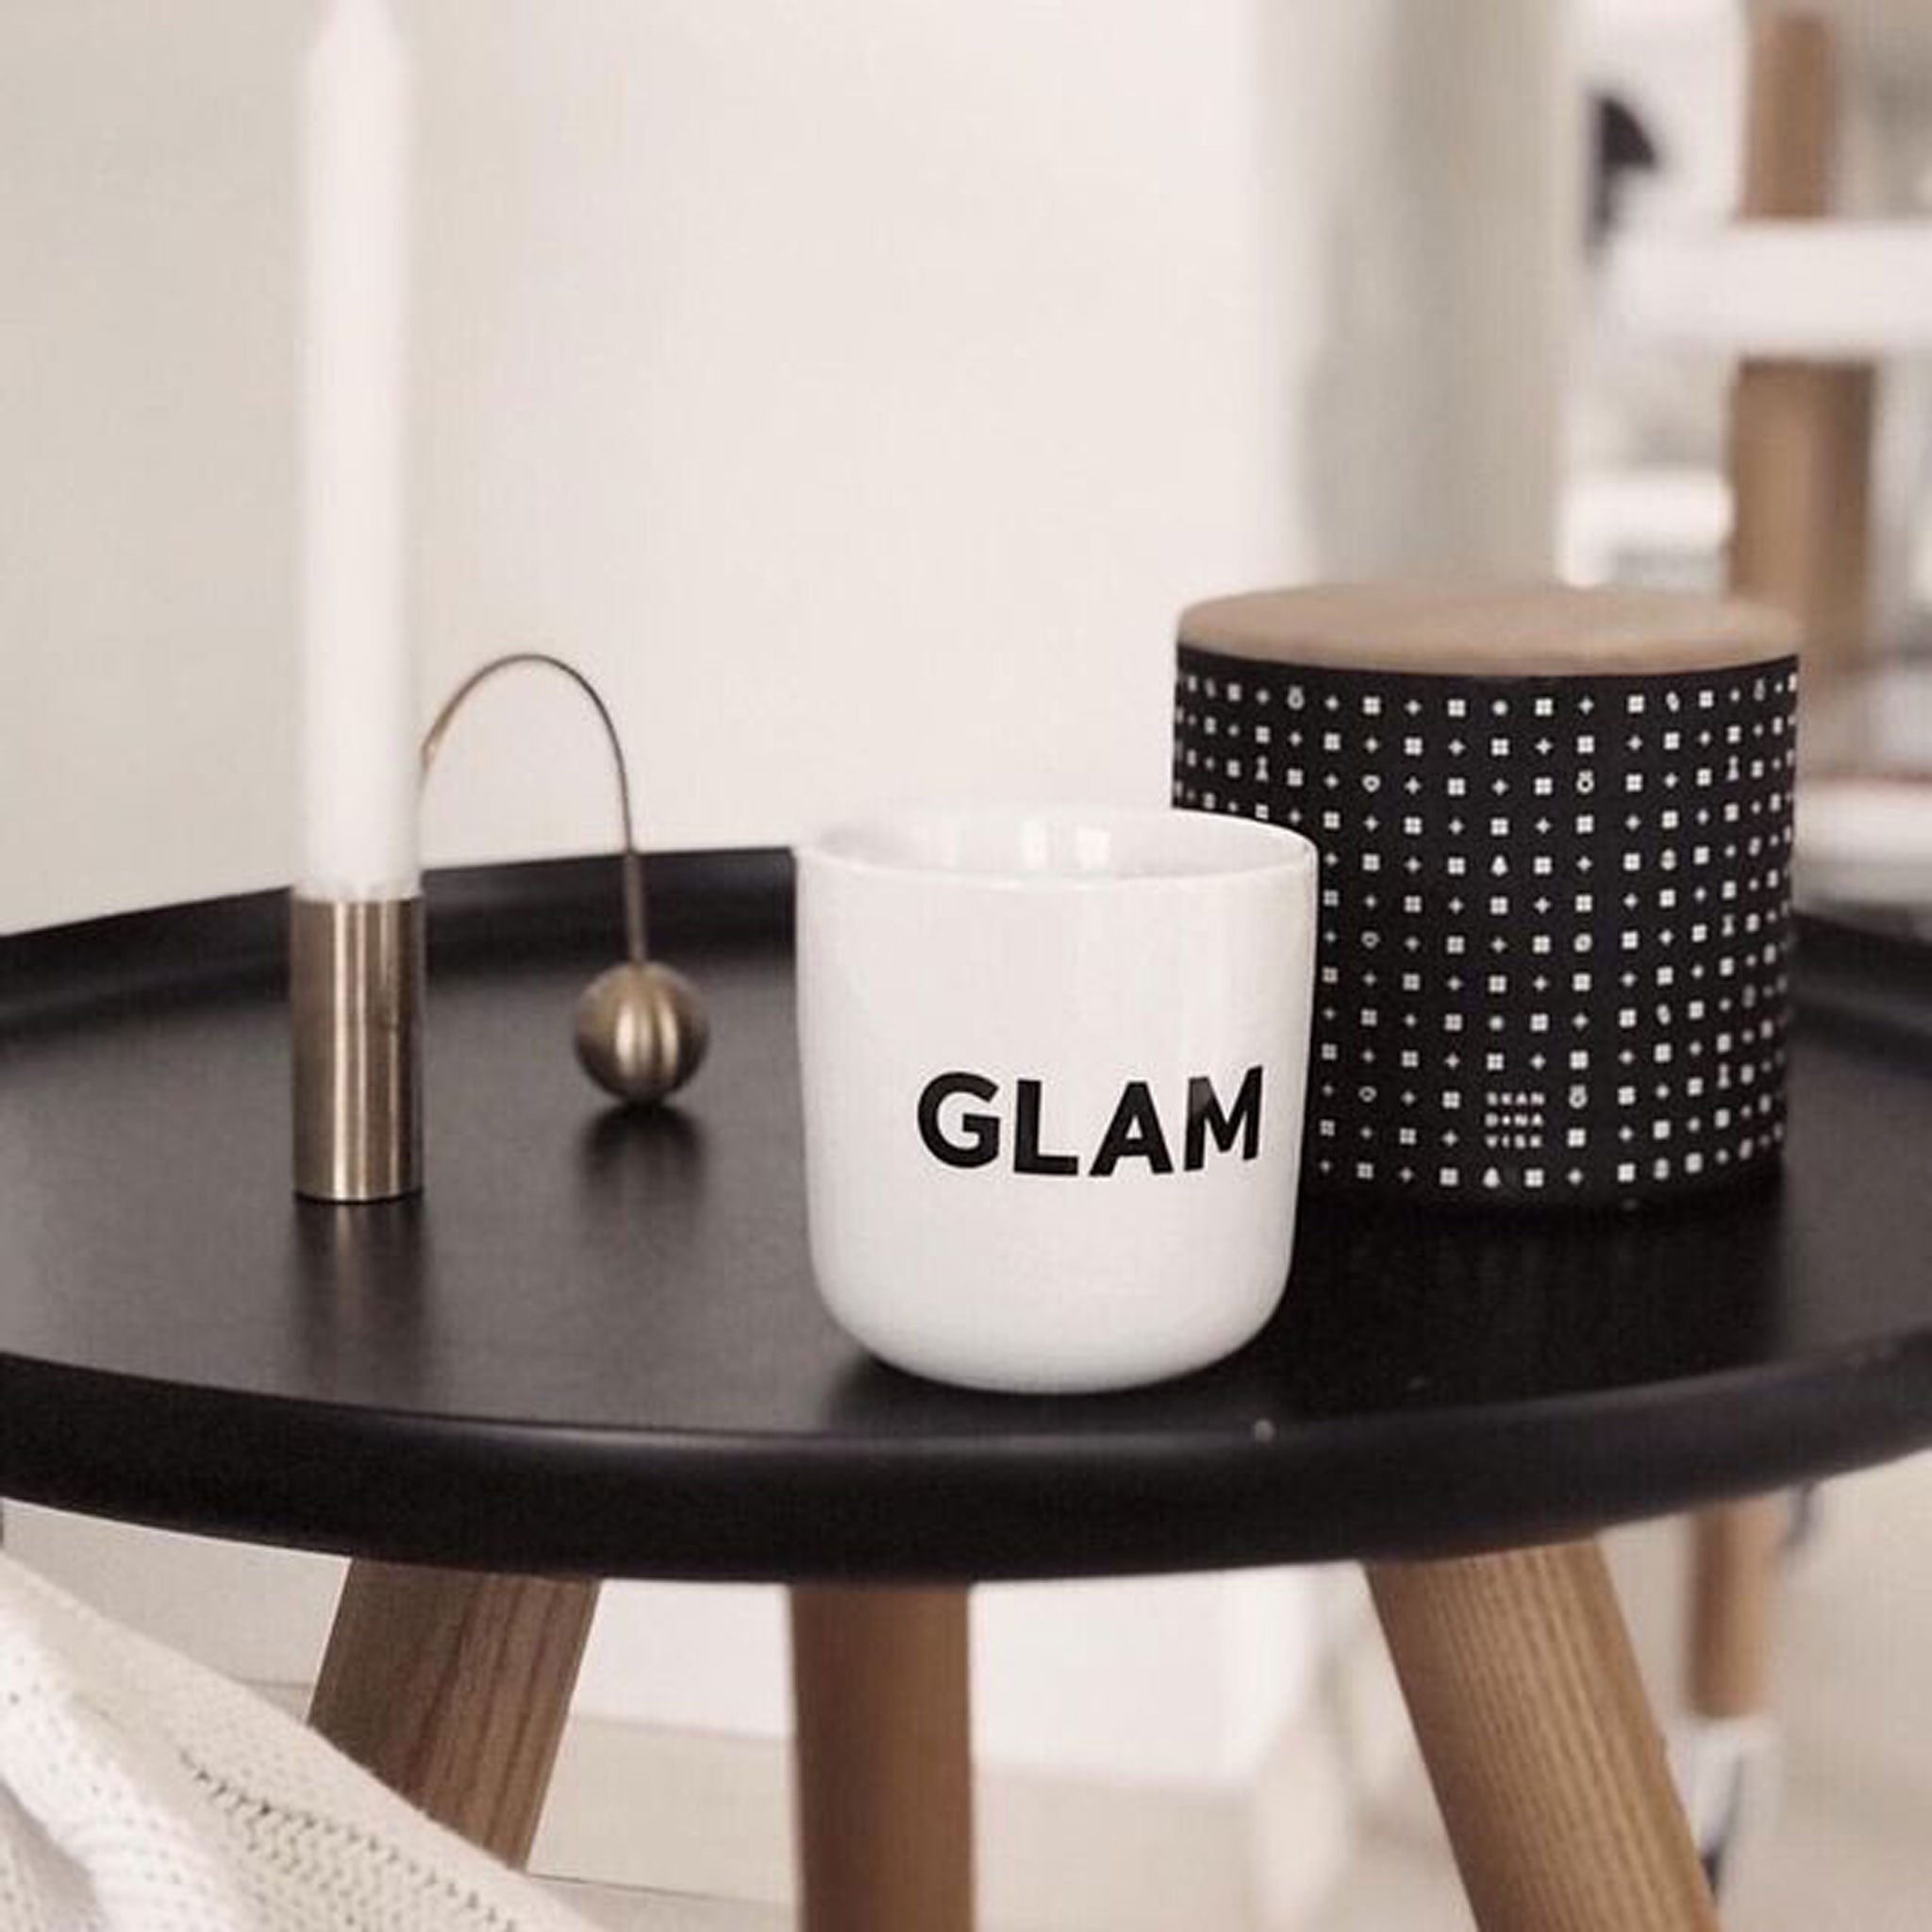 GLAM | weisser Kaffee- & Tee-BECHER mit schwarzer Typo | Beat Serie | PLTY